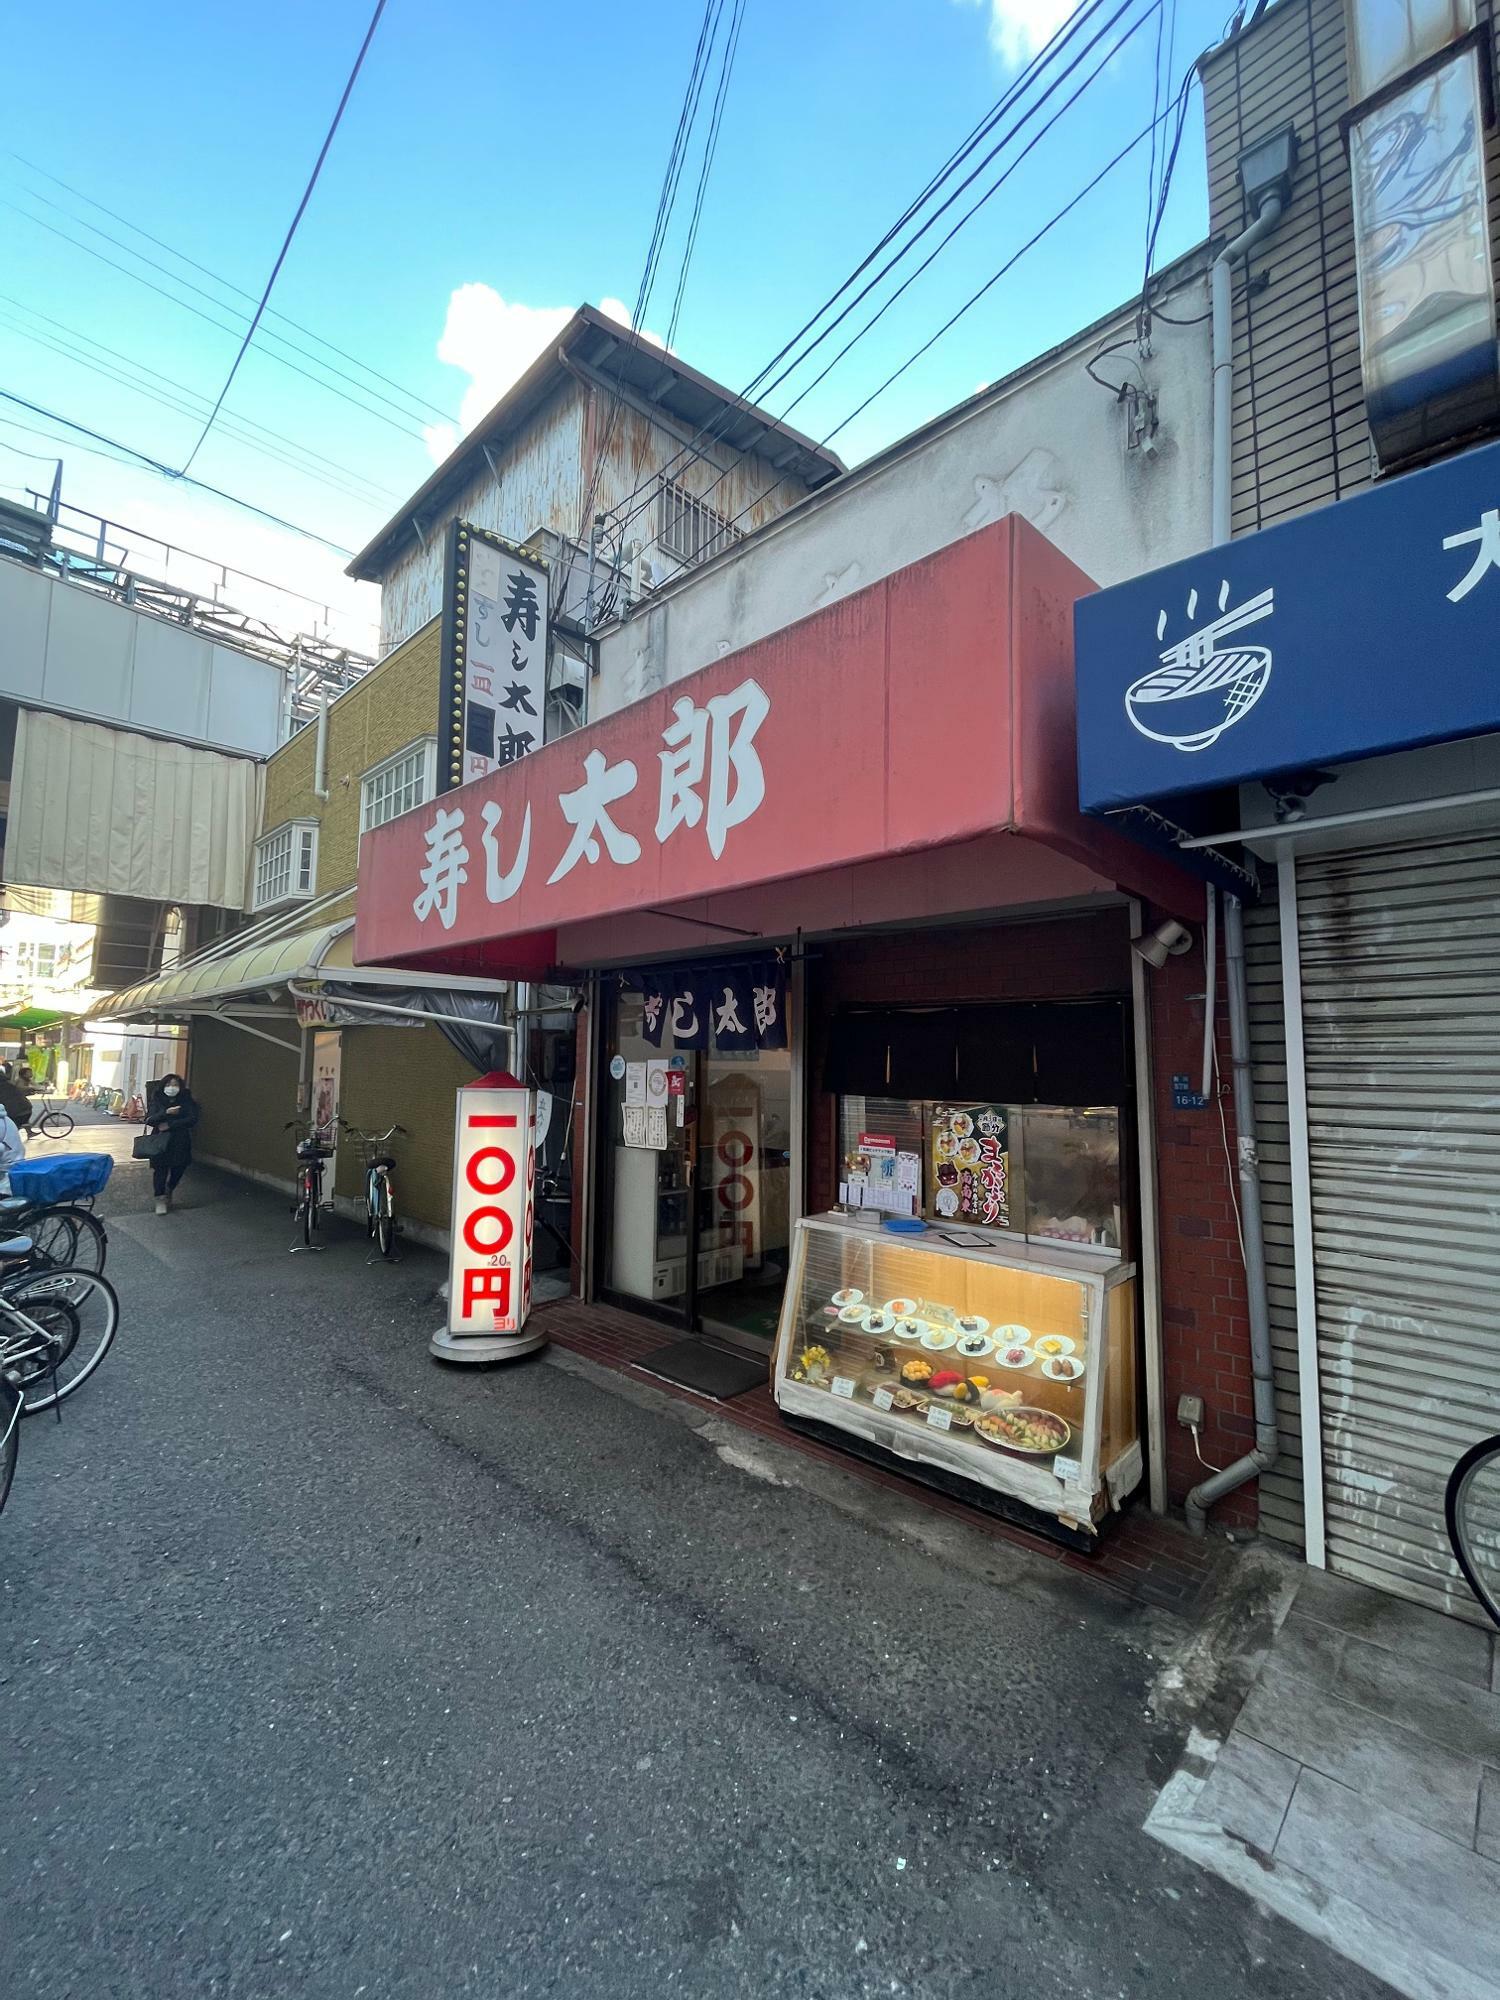 写真左は駒川商店街のアーケード。店の裏手、徒歩1分の場所には針中野駅があリます